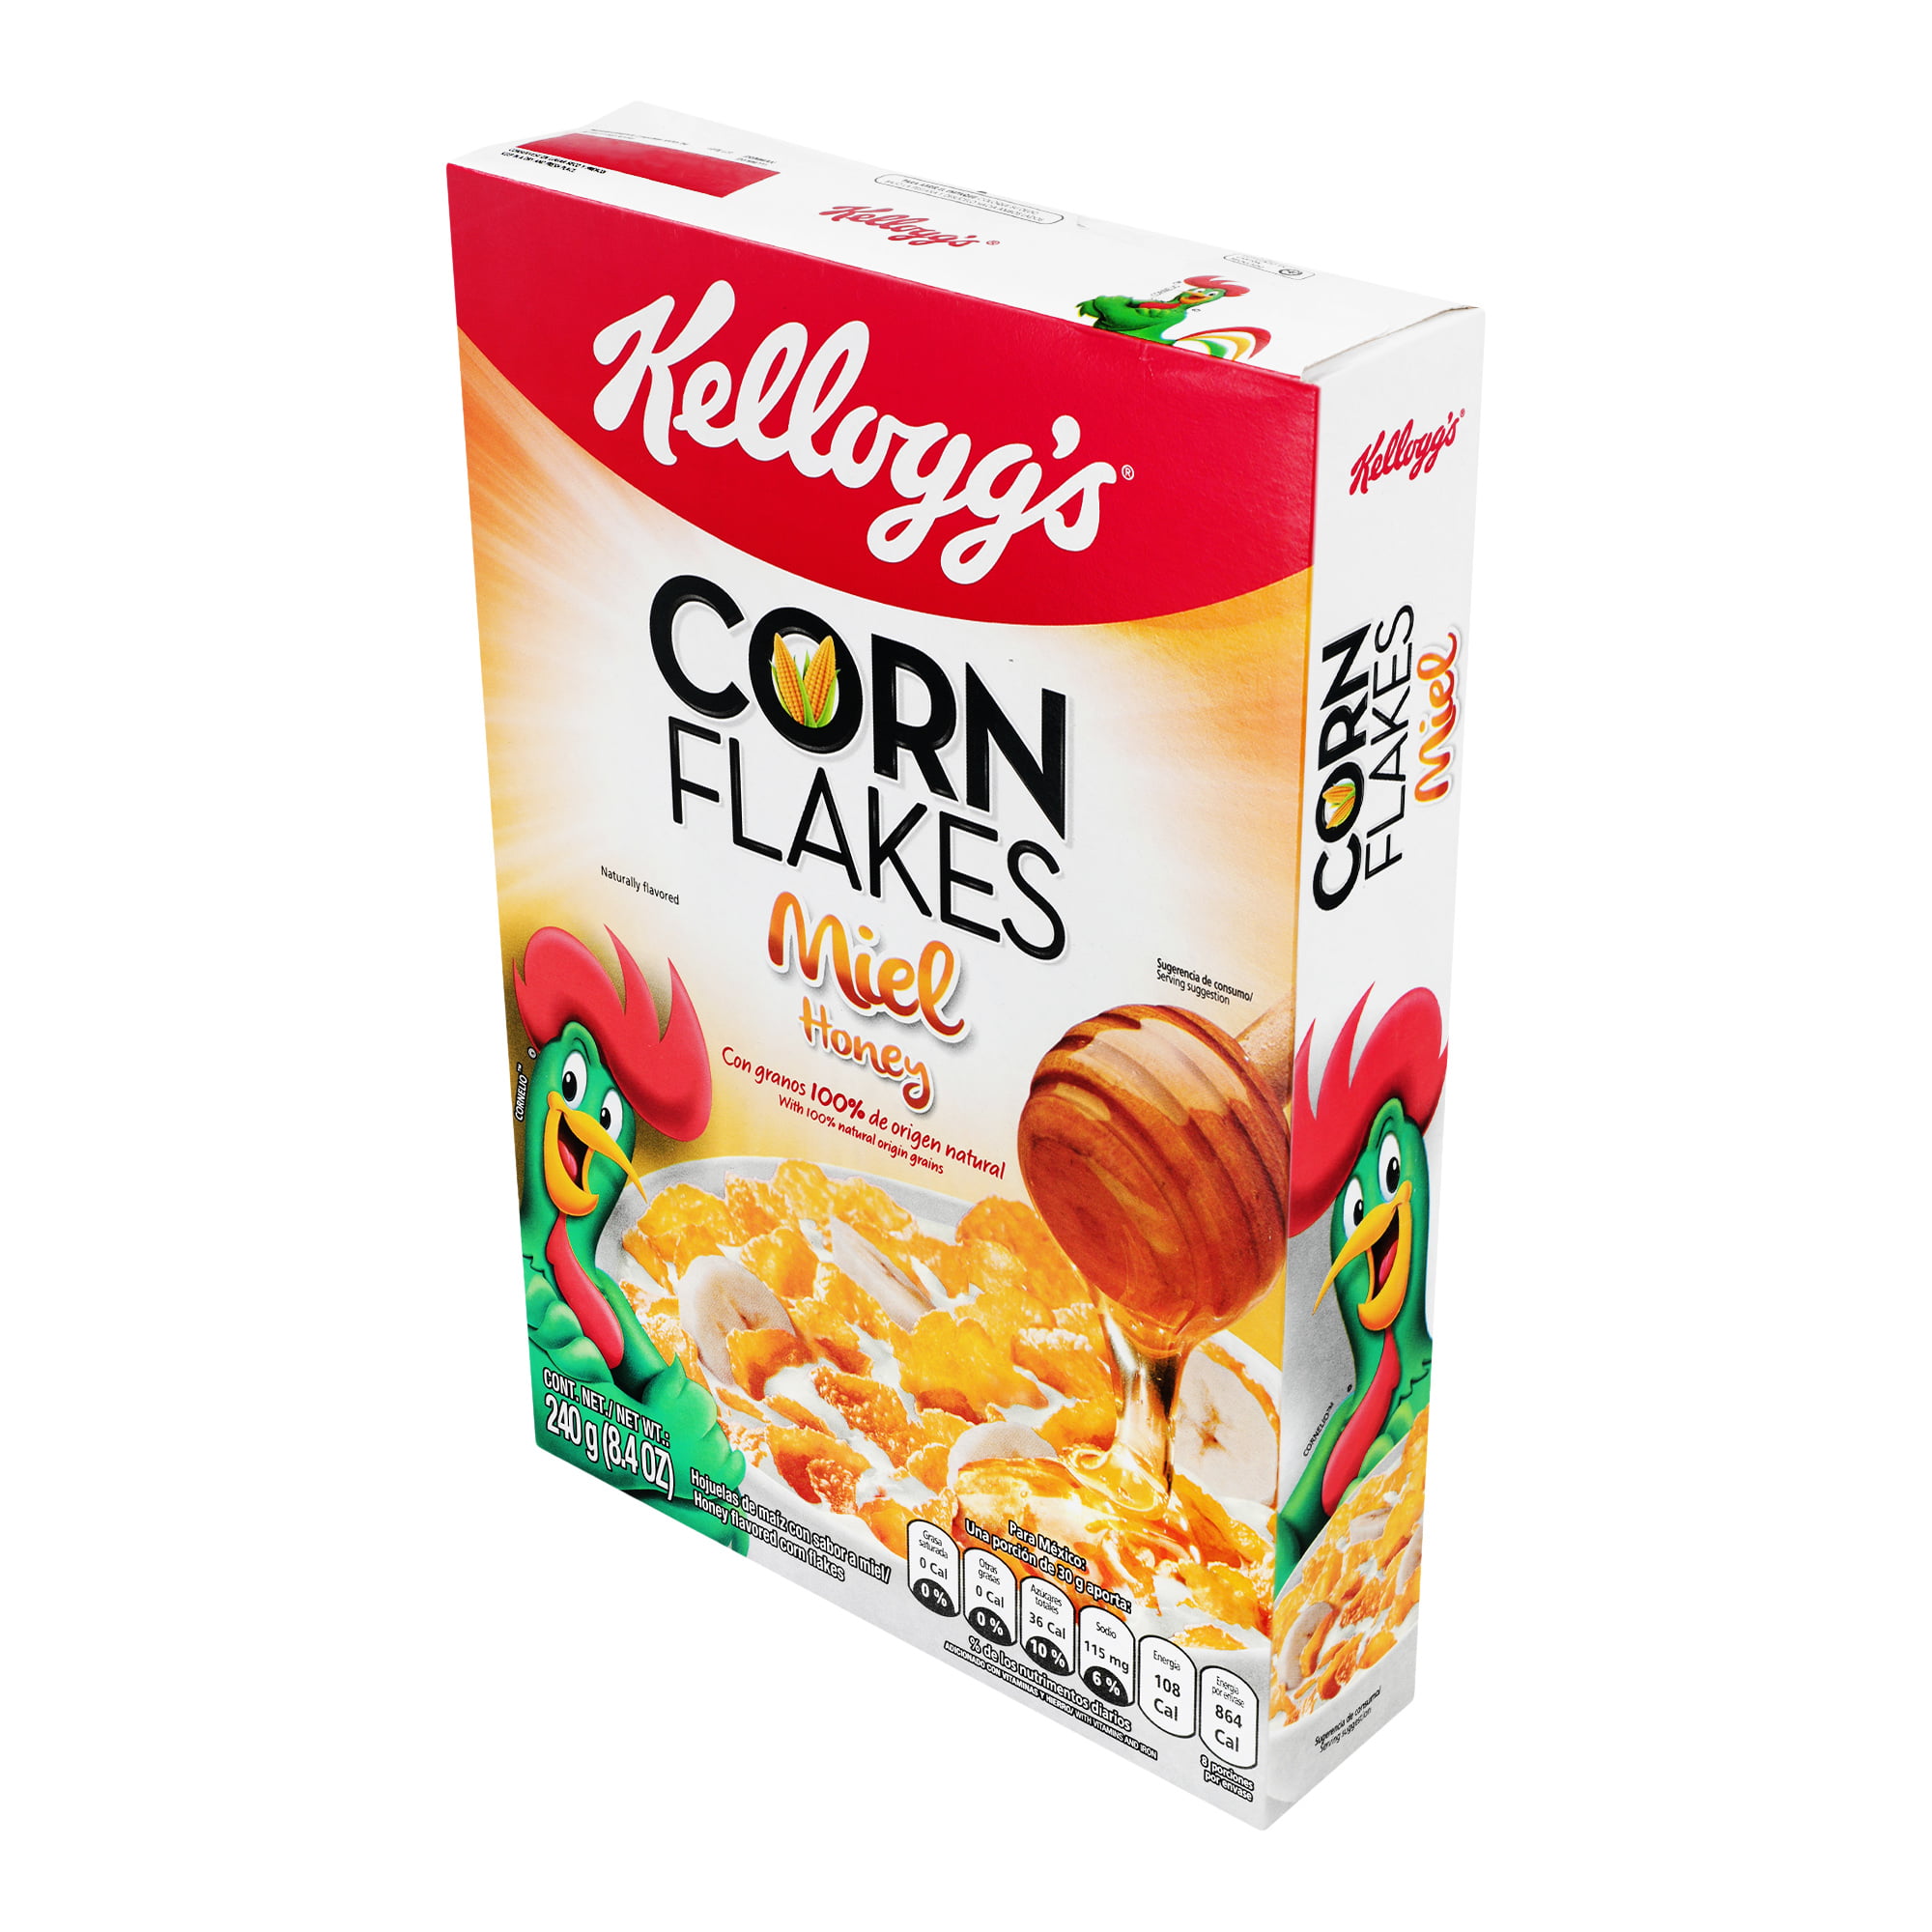 Kellogg's Sachet Corn Flakes – 32g – ShopOnClick